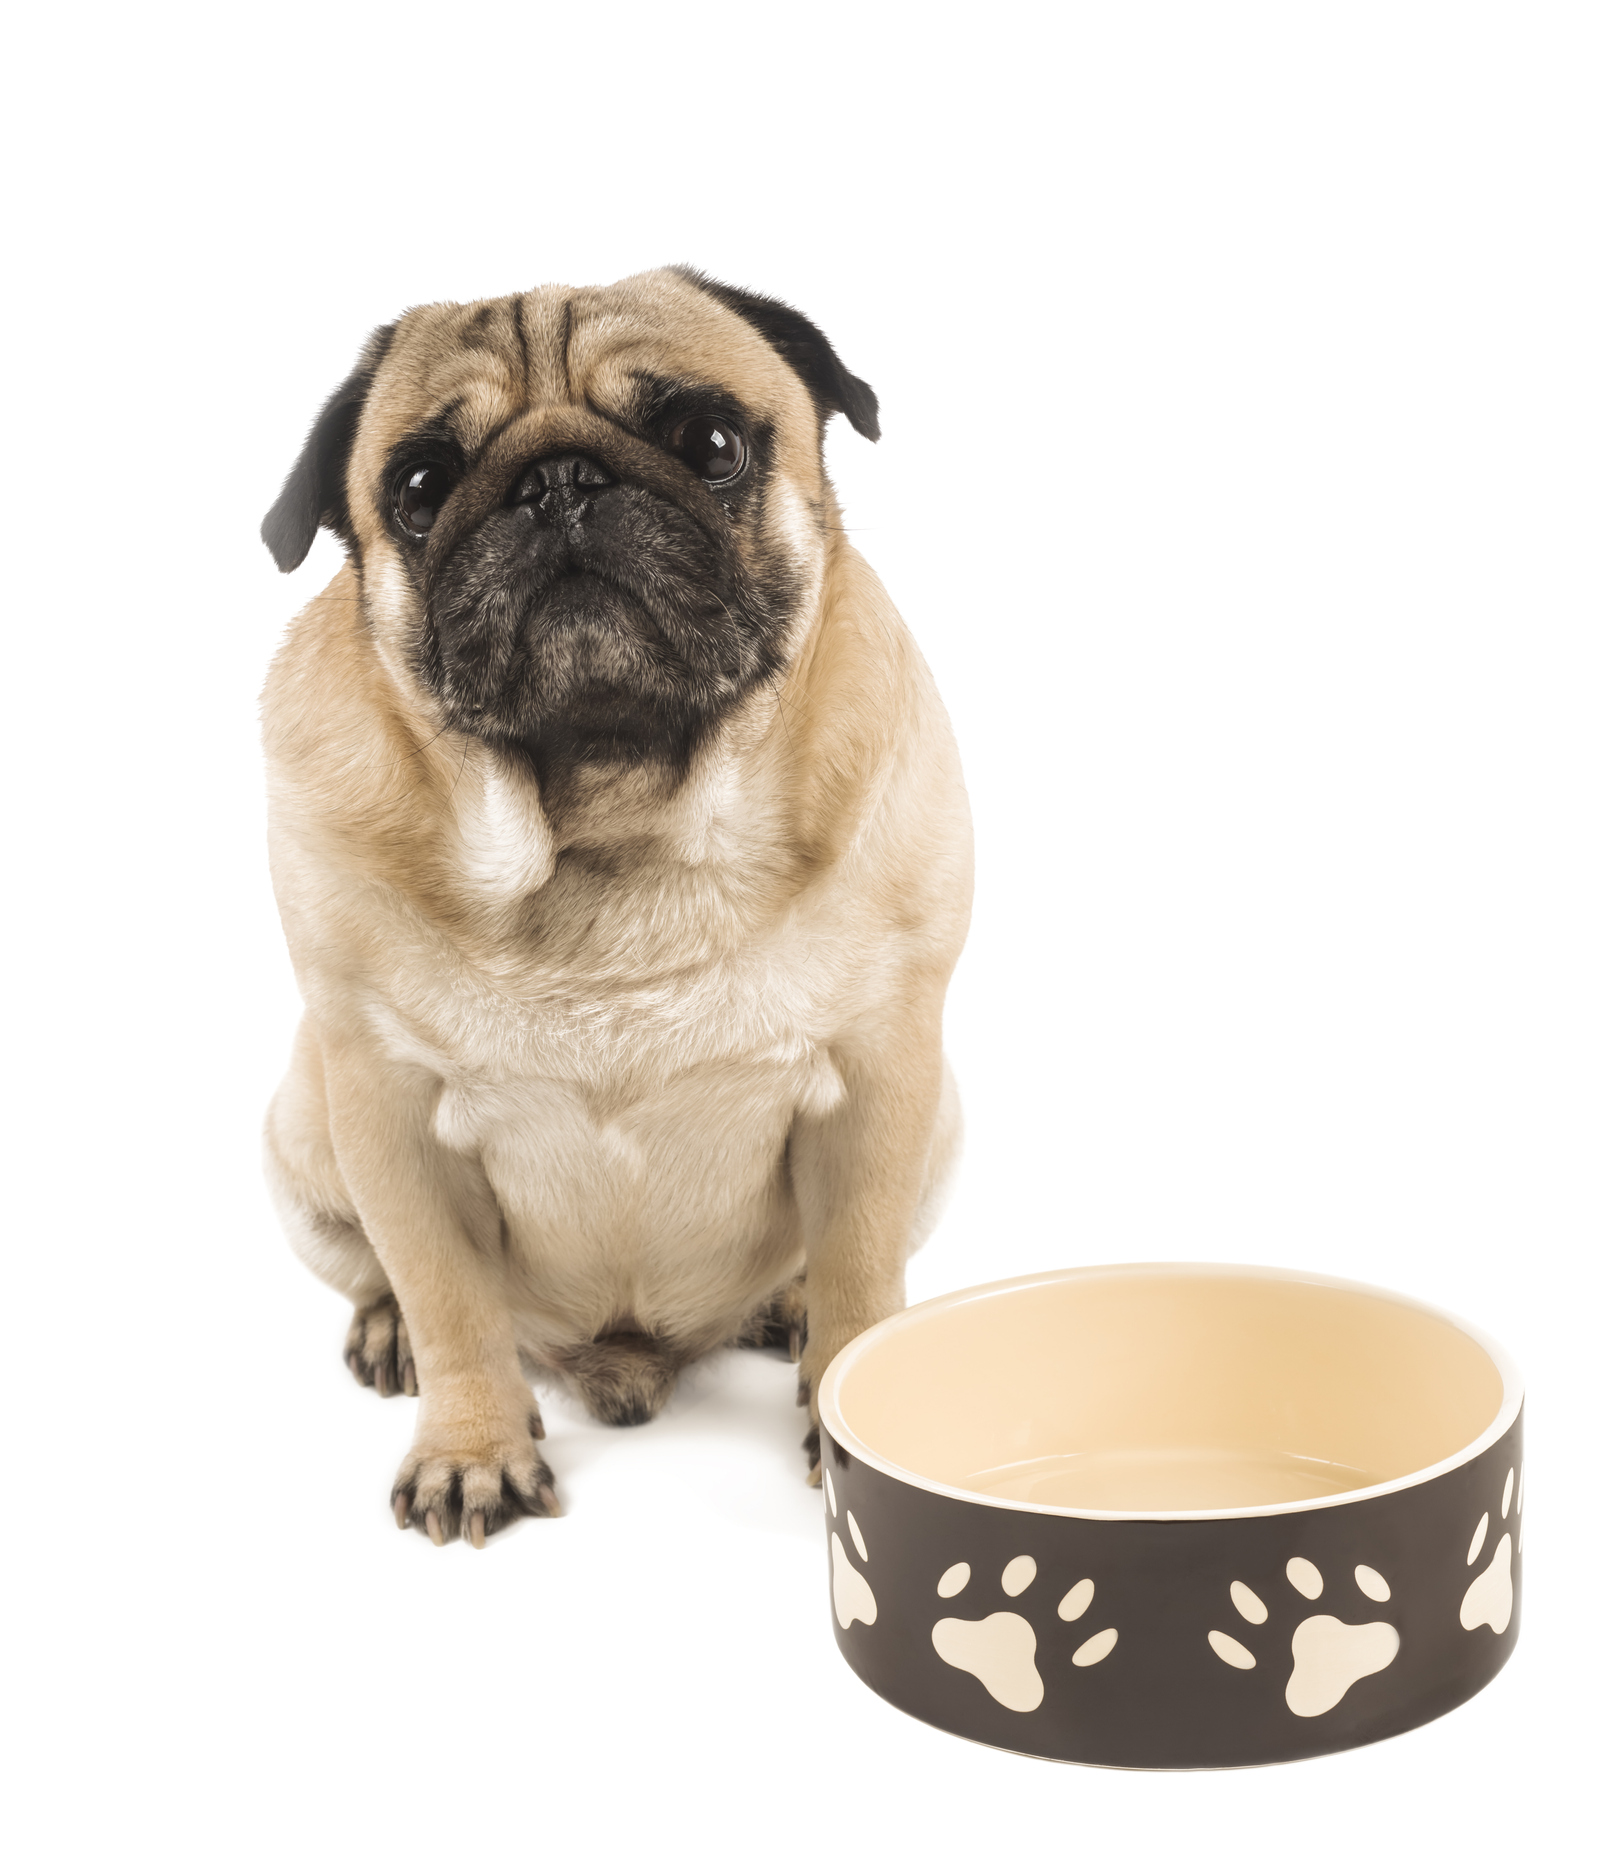 Food Sensitivities in Dogs